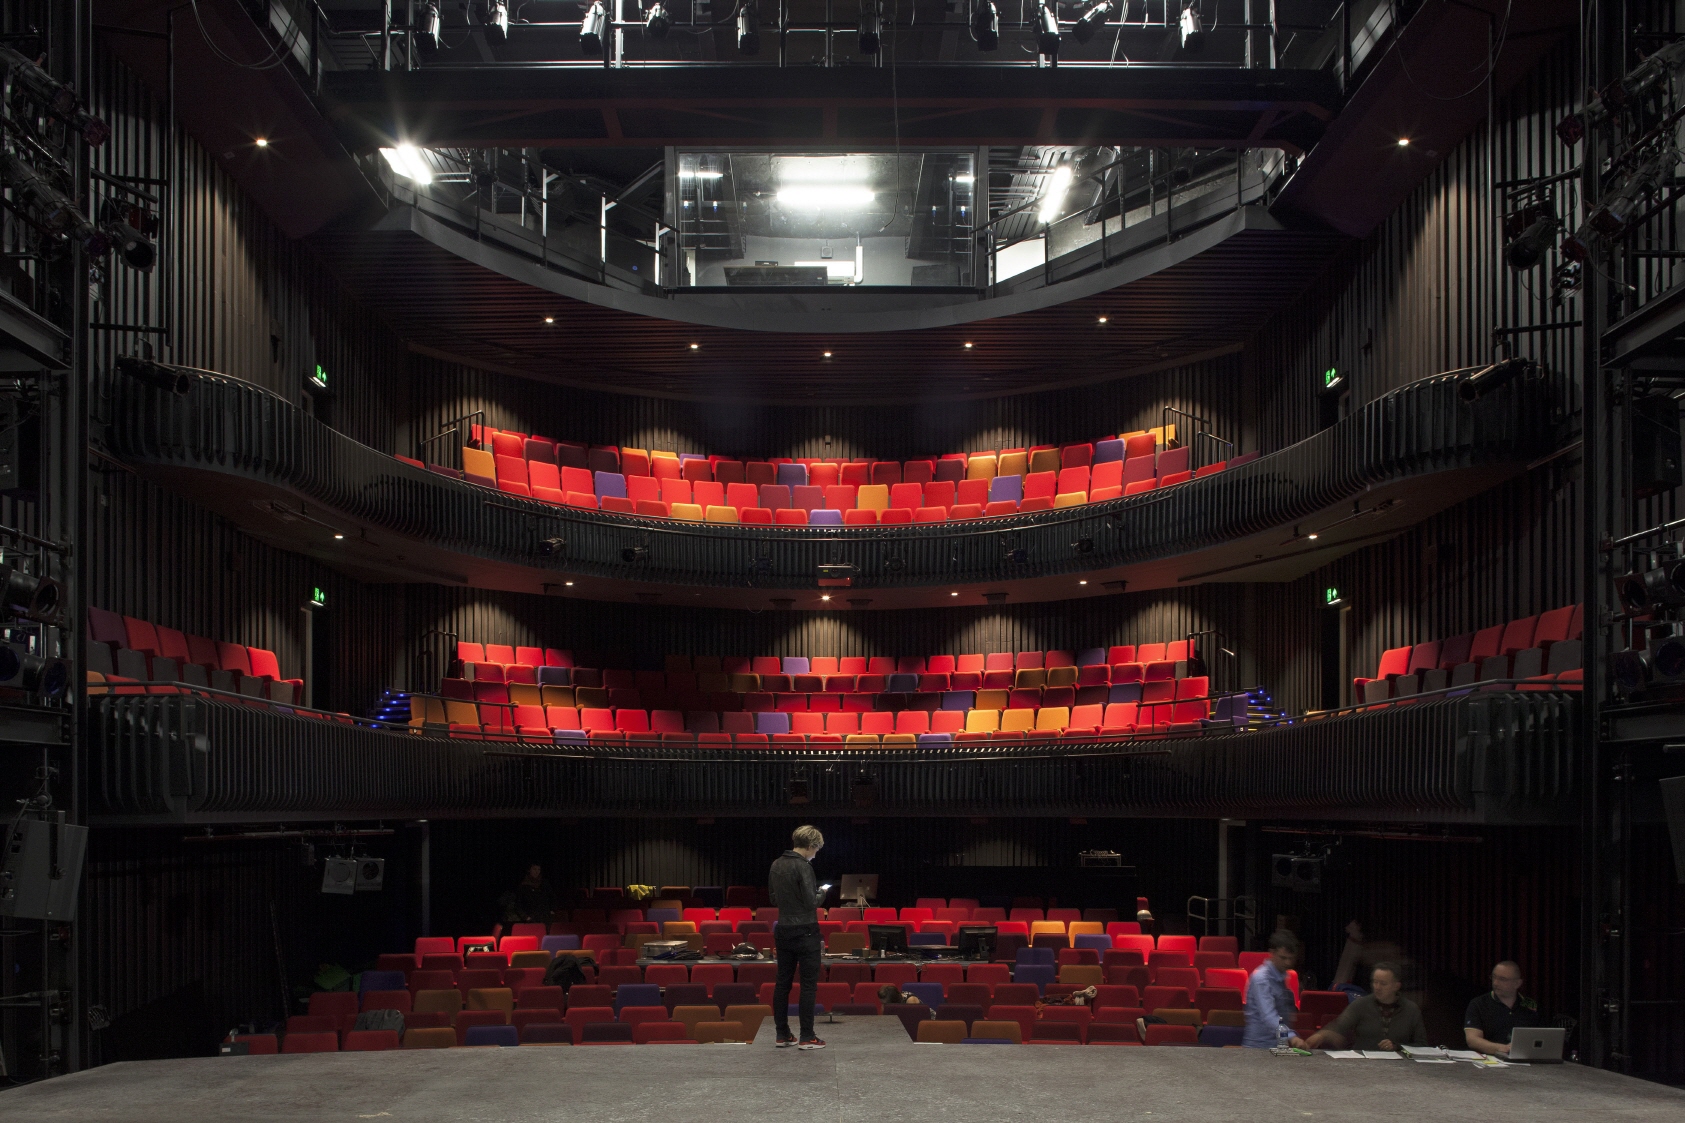 Культурный центр театр. Онцертный зал "o2 Apollo Manchester". Интерьер современного театра. Манчестер театр зал. Современная опера на сцене.